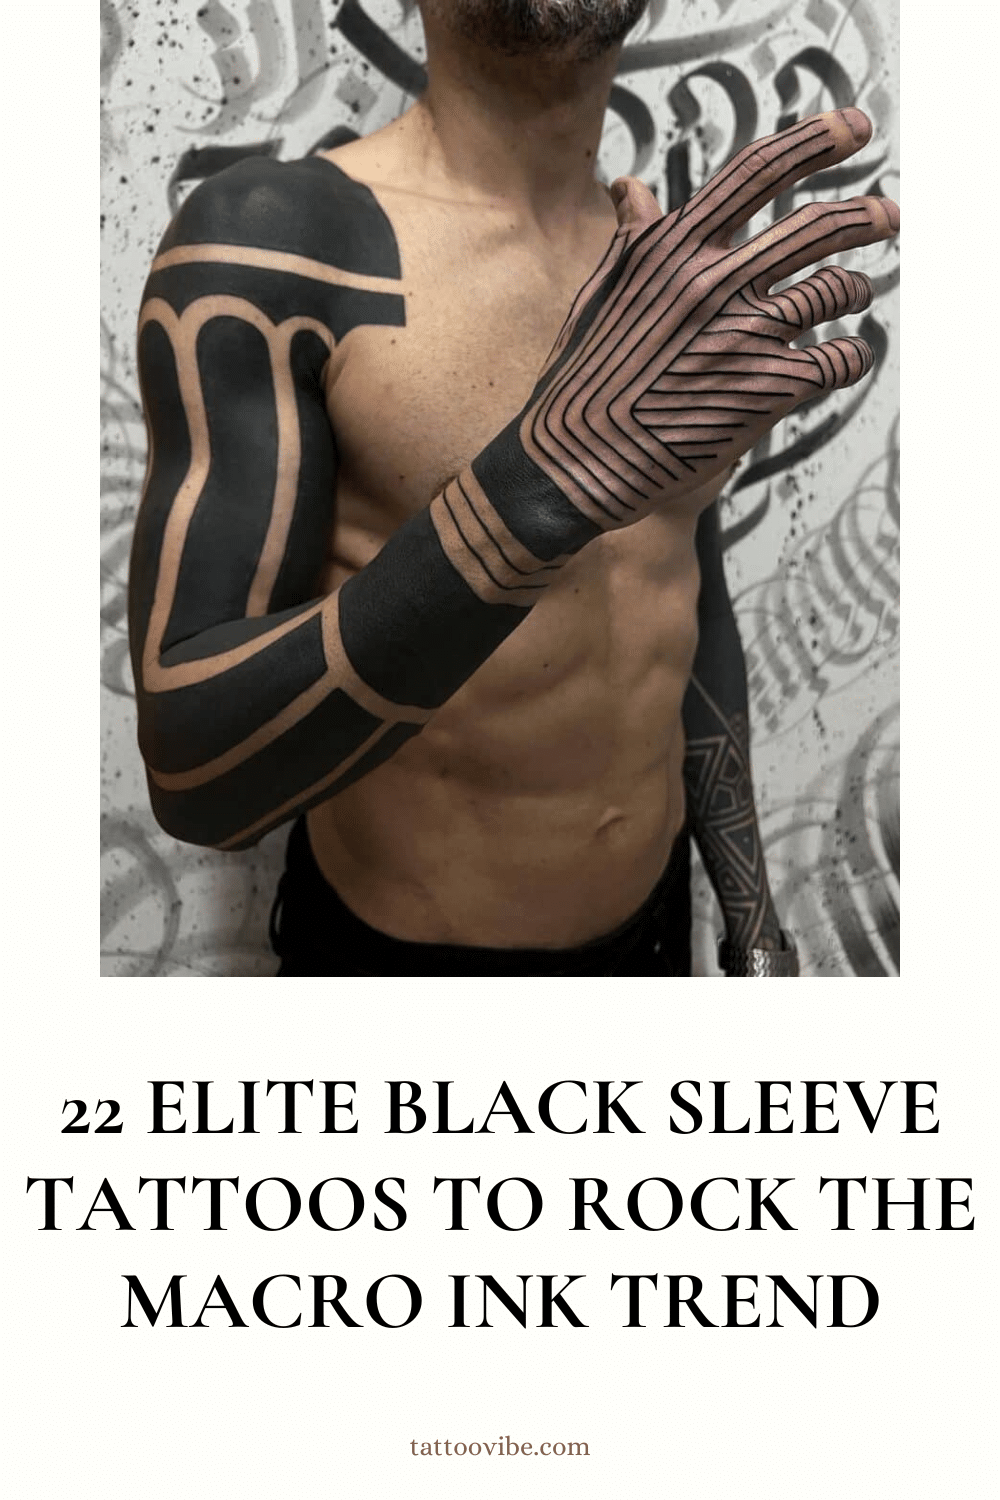 22 Elite Black Sleeve Tattoos To Rock The Macro Ink Trend